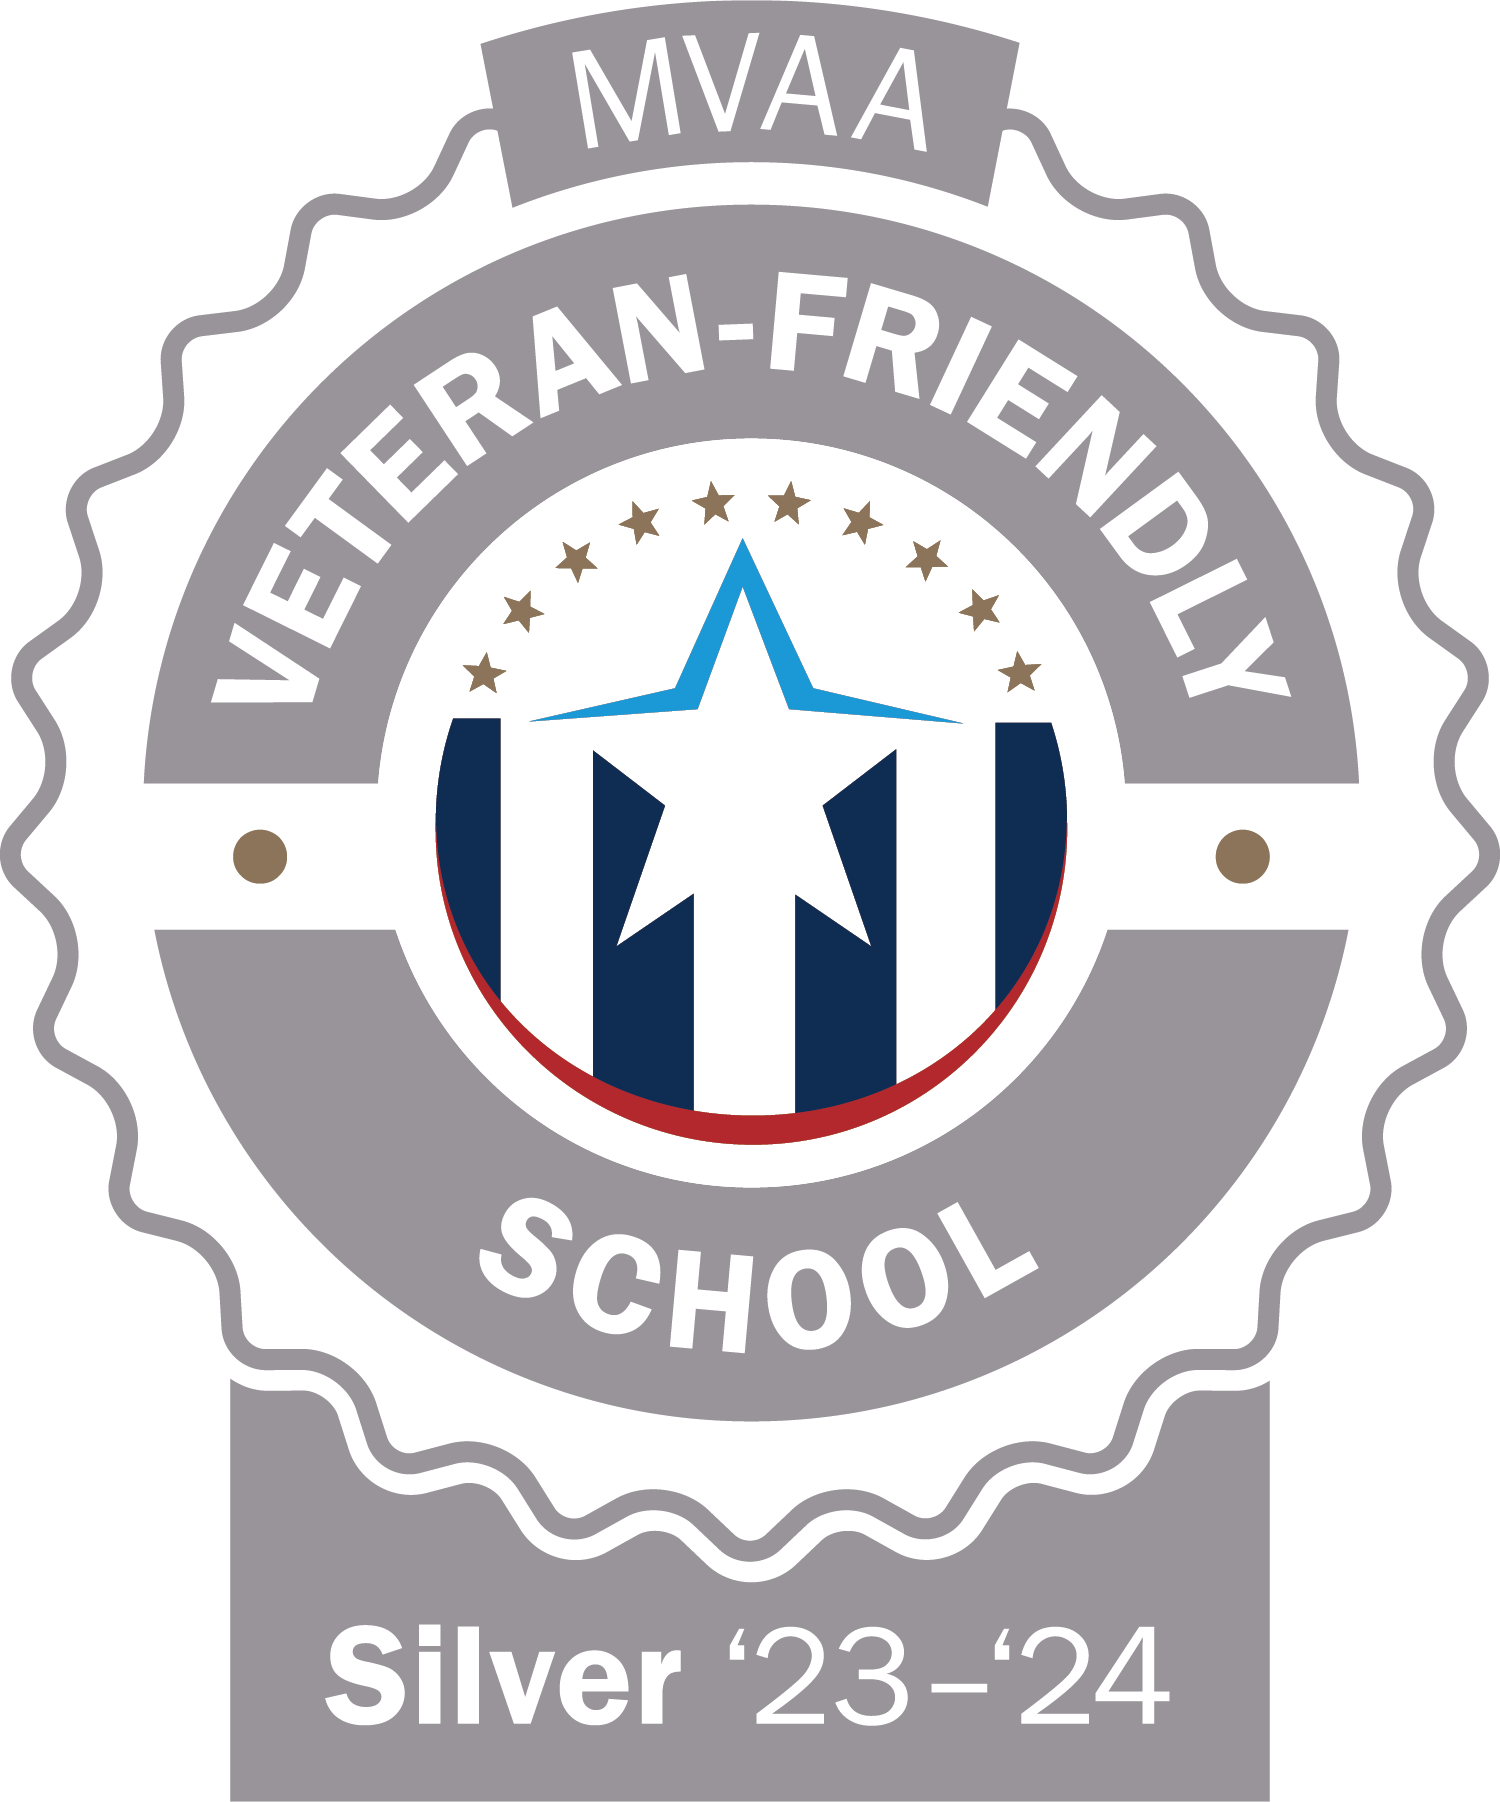 MVAA Veteran Friendly School Silver 2023-2024